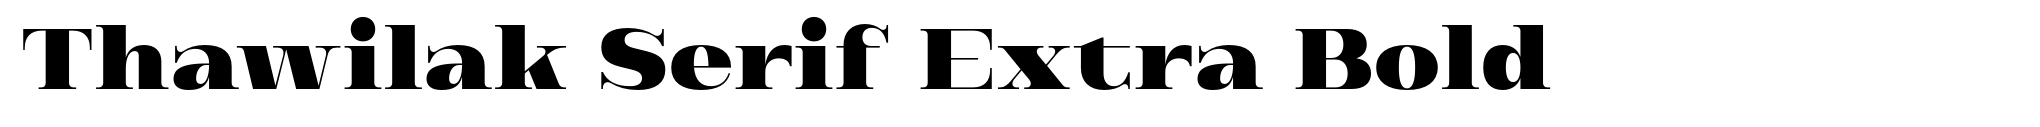 Thawilak Serif Extra Bold image